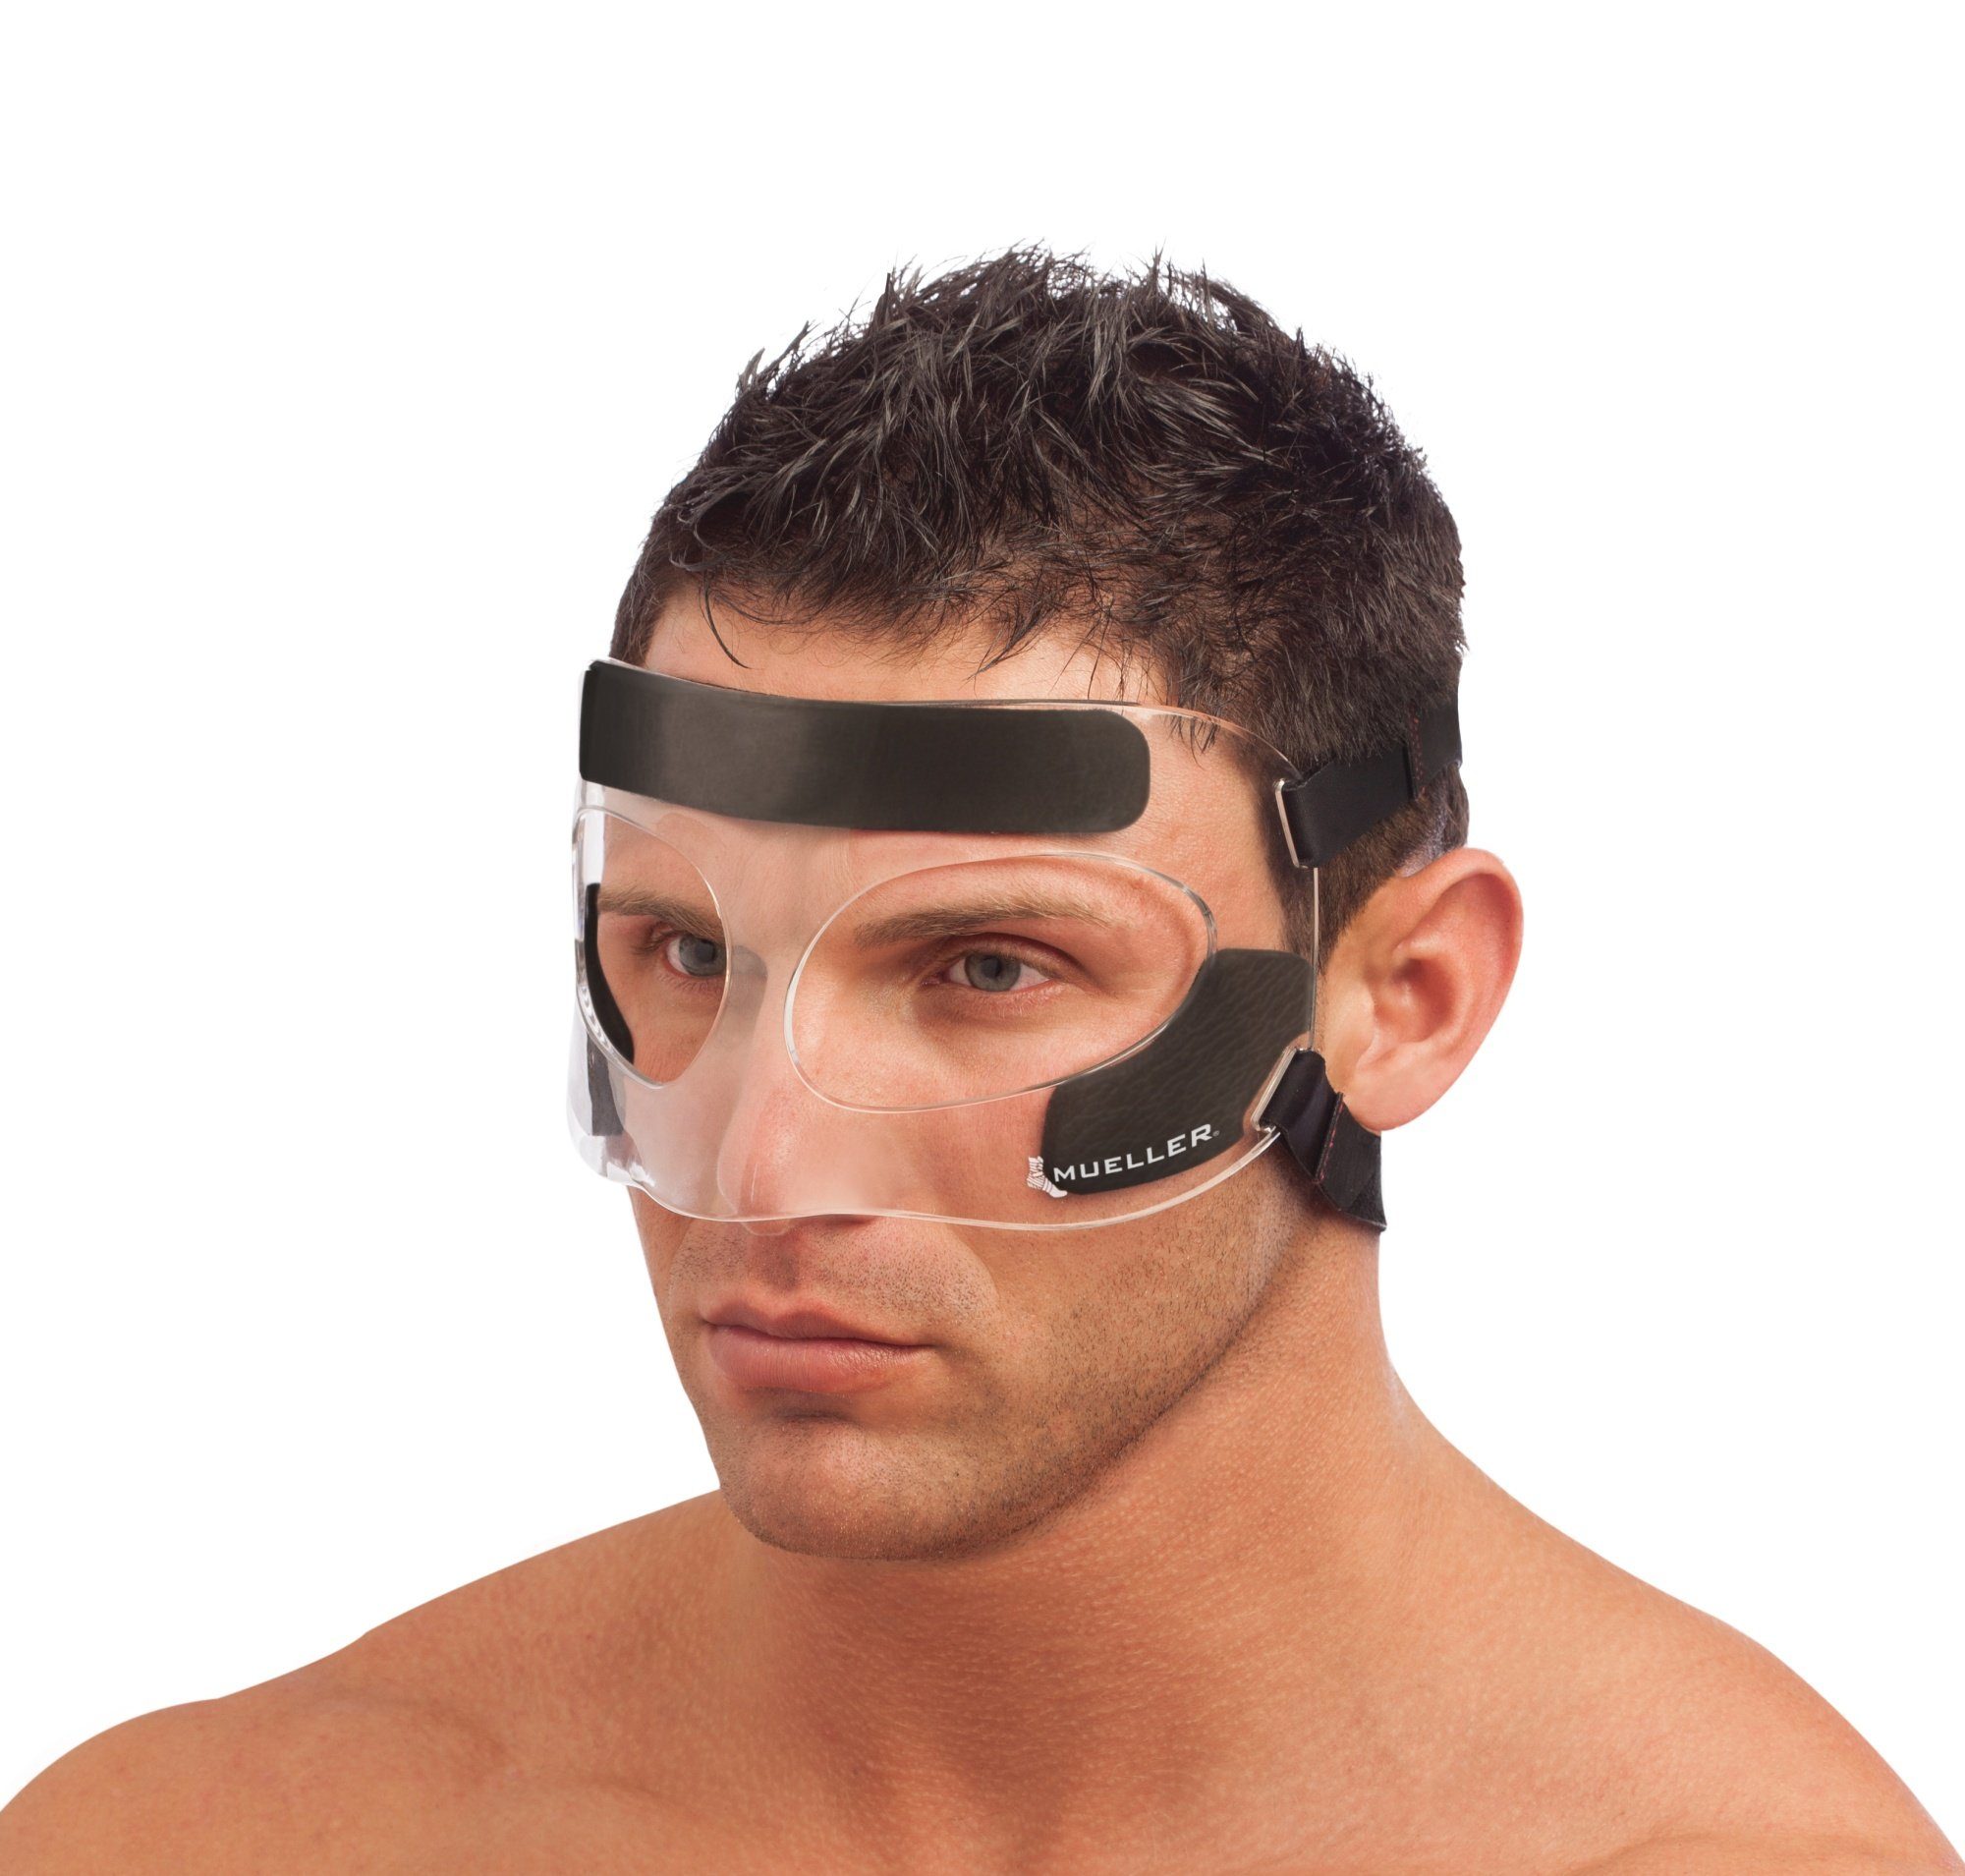 Mueller an Sports Kopfband 6 Punkten verstellbares Kopfschutz Schaumstoffpolster, Gesichtsschutz Medicine 4 Nasen-und Maximum,